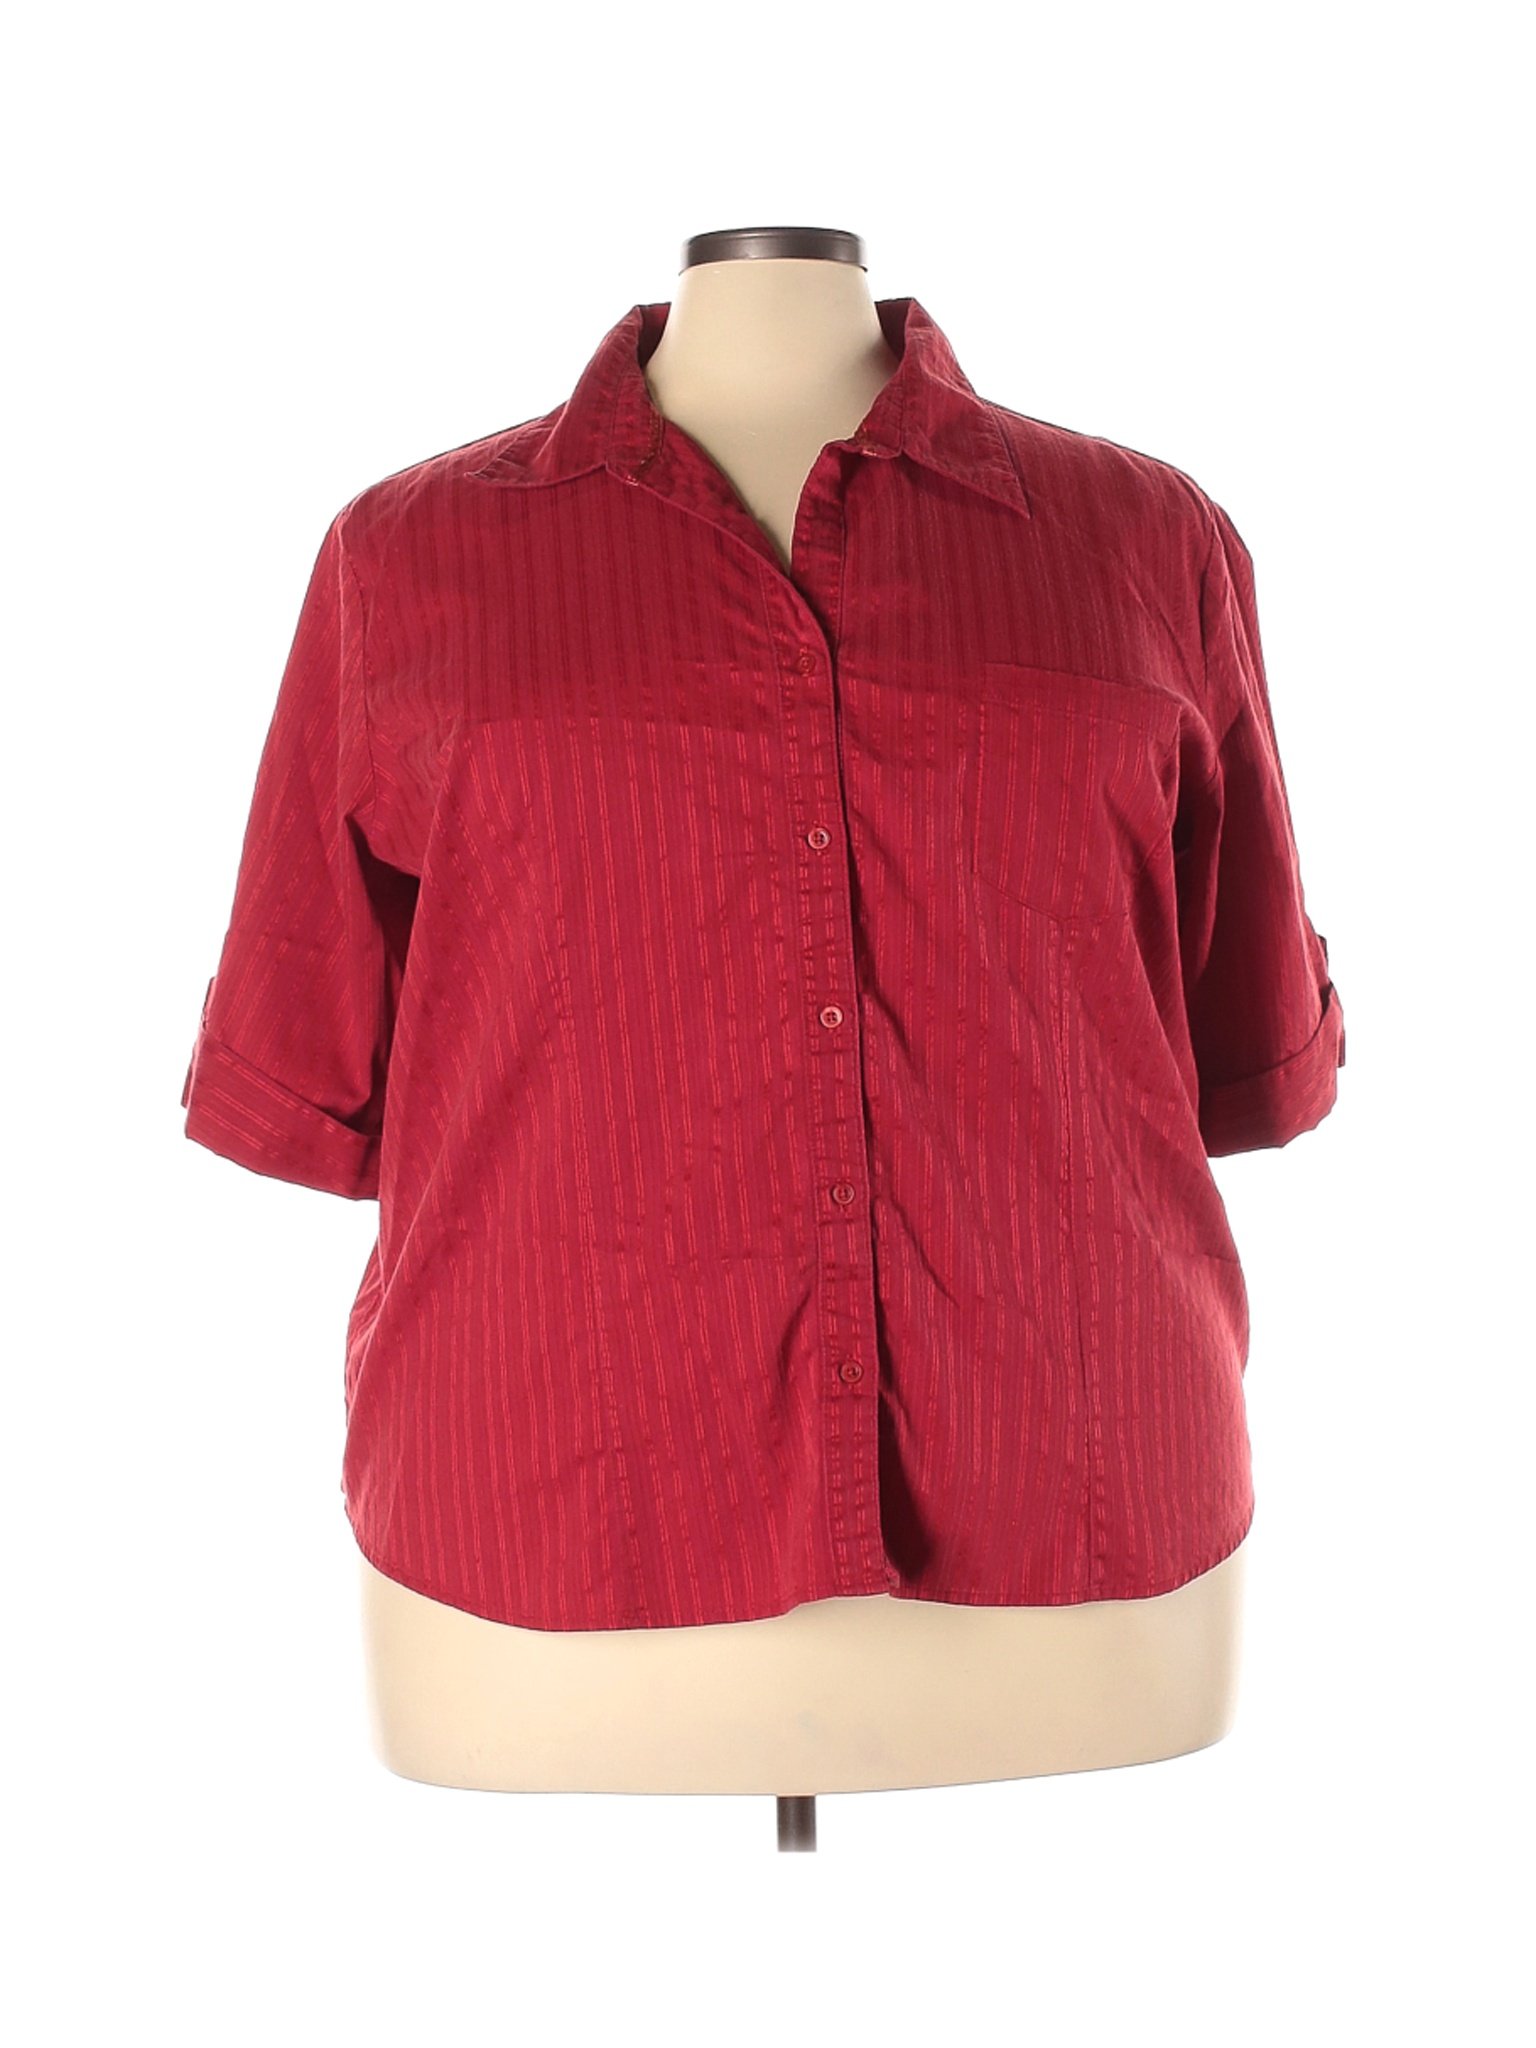 red button up shirt 3x